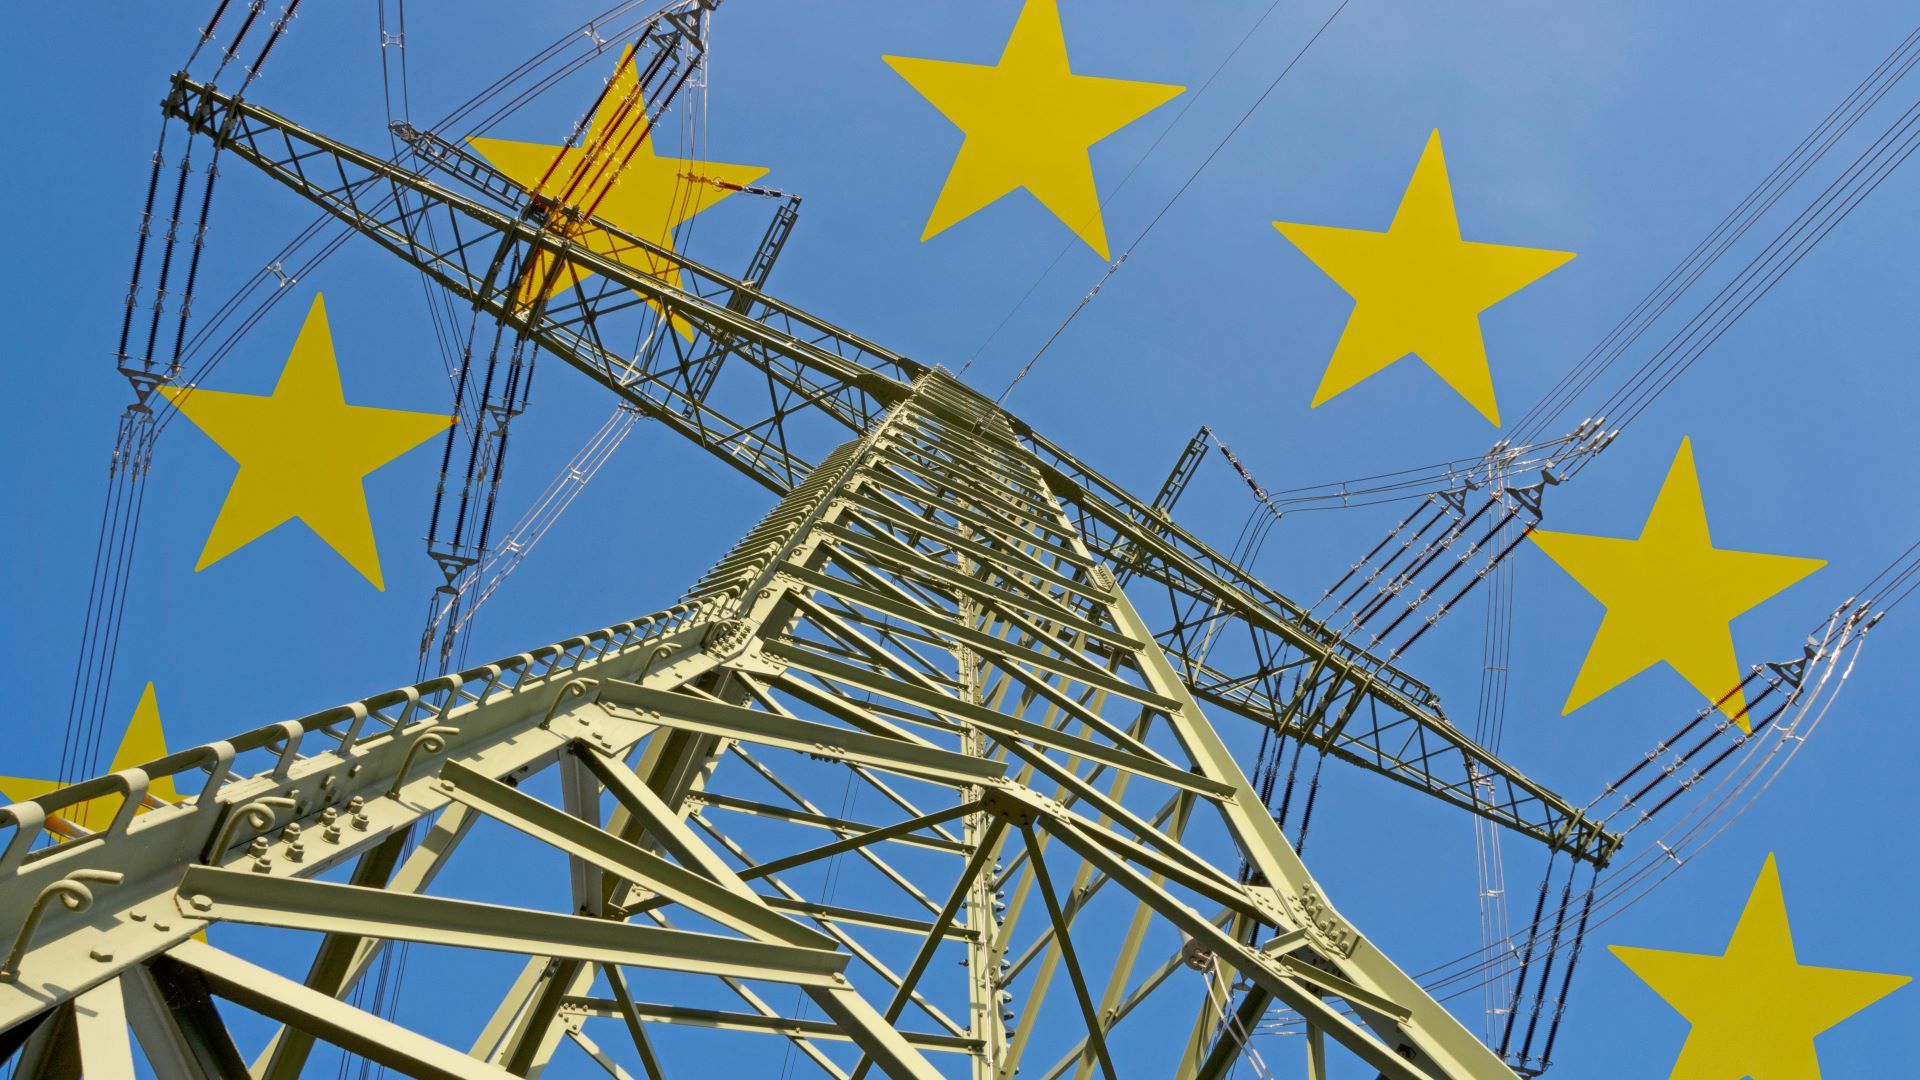 Energy EU electricity